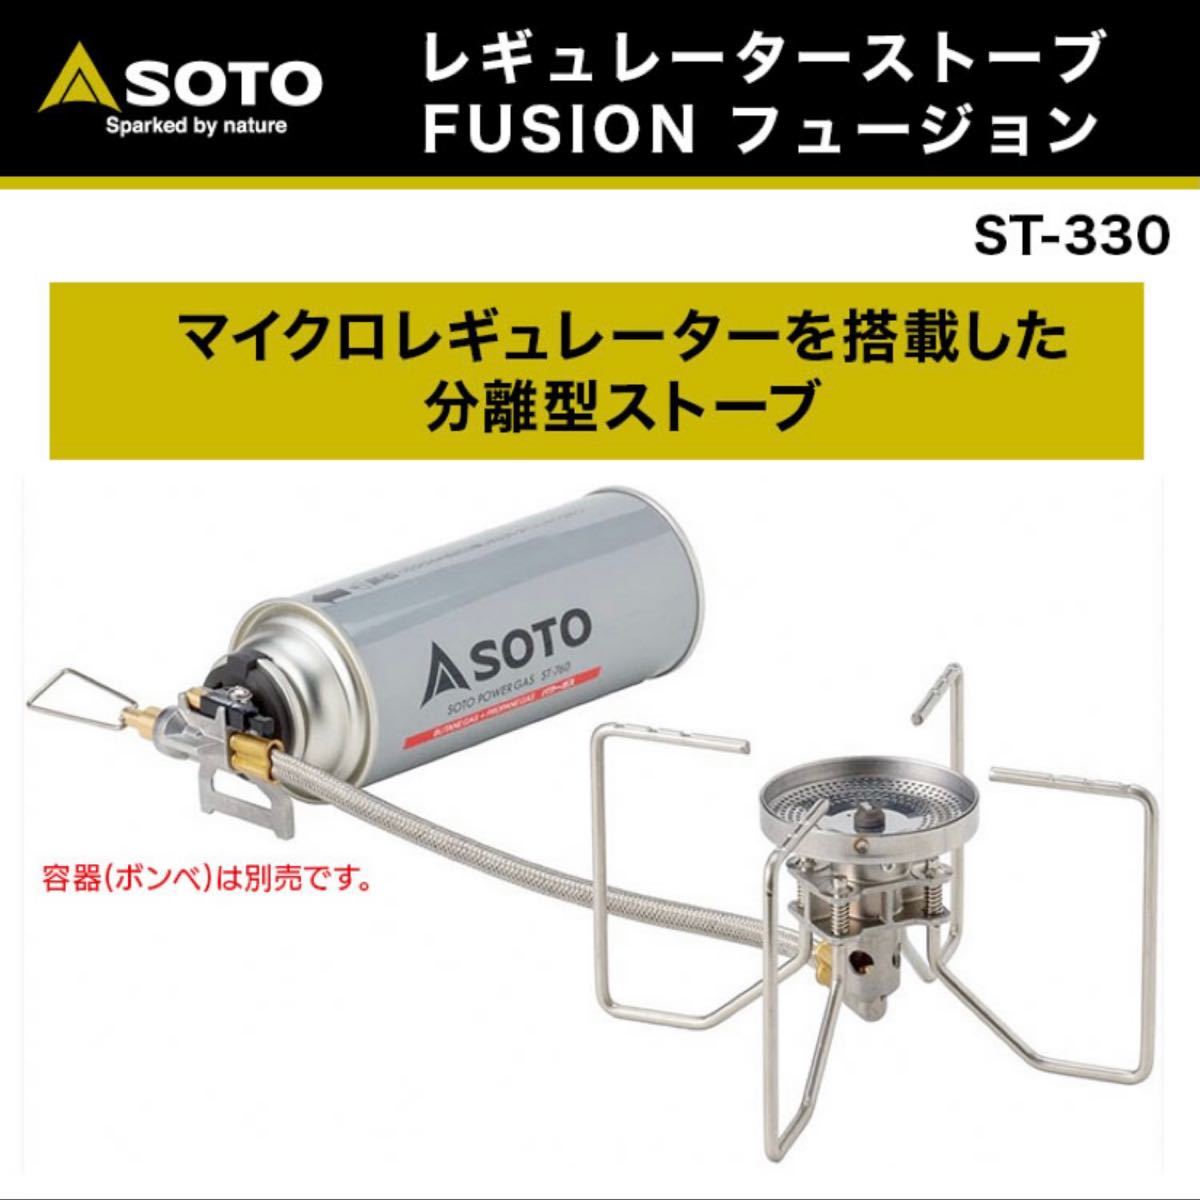 SOTO レギュレーターストーブ FUSION フュージョン ST-330 シングルバーナー 新富士バーナー